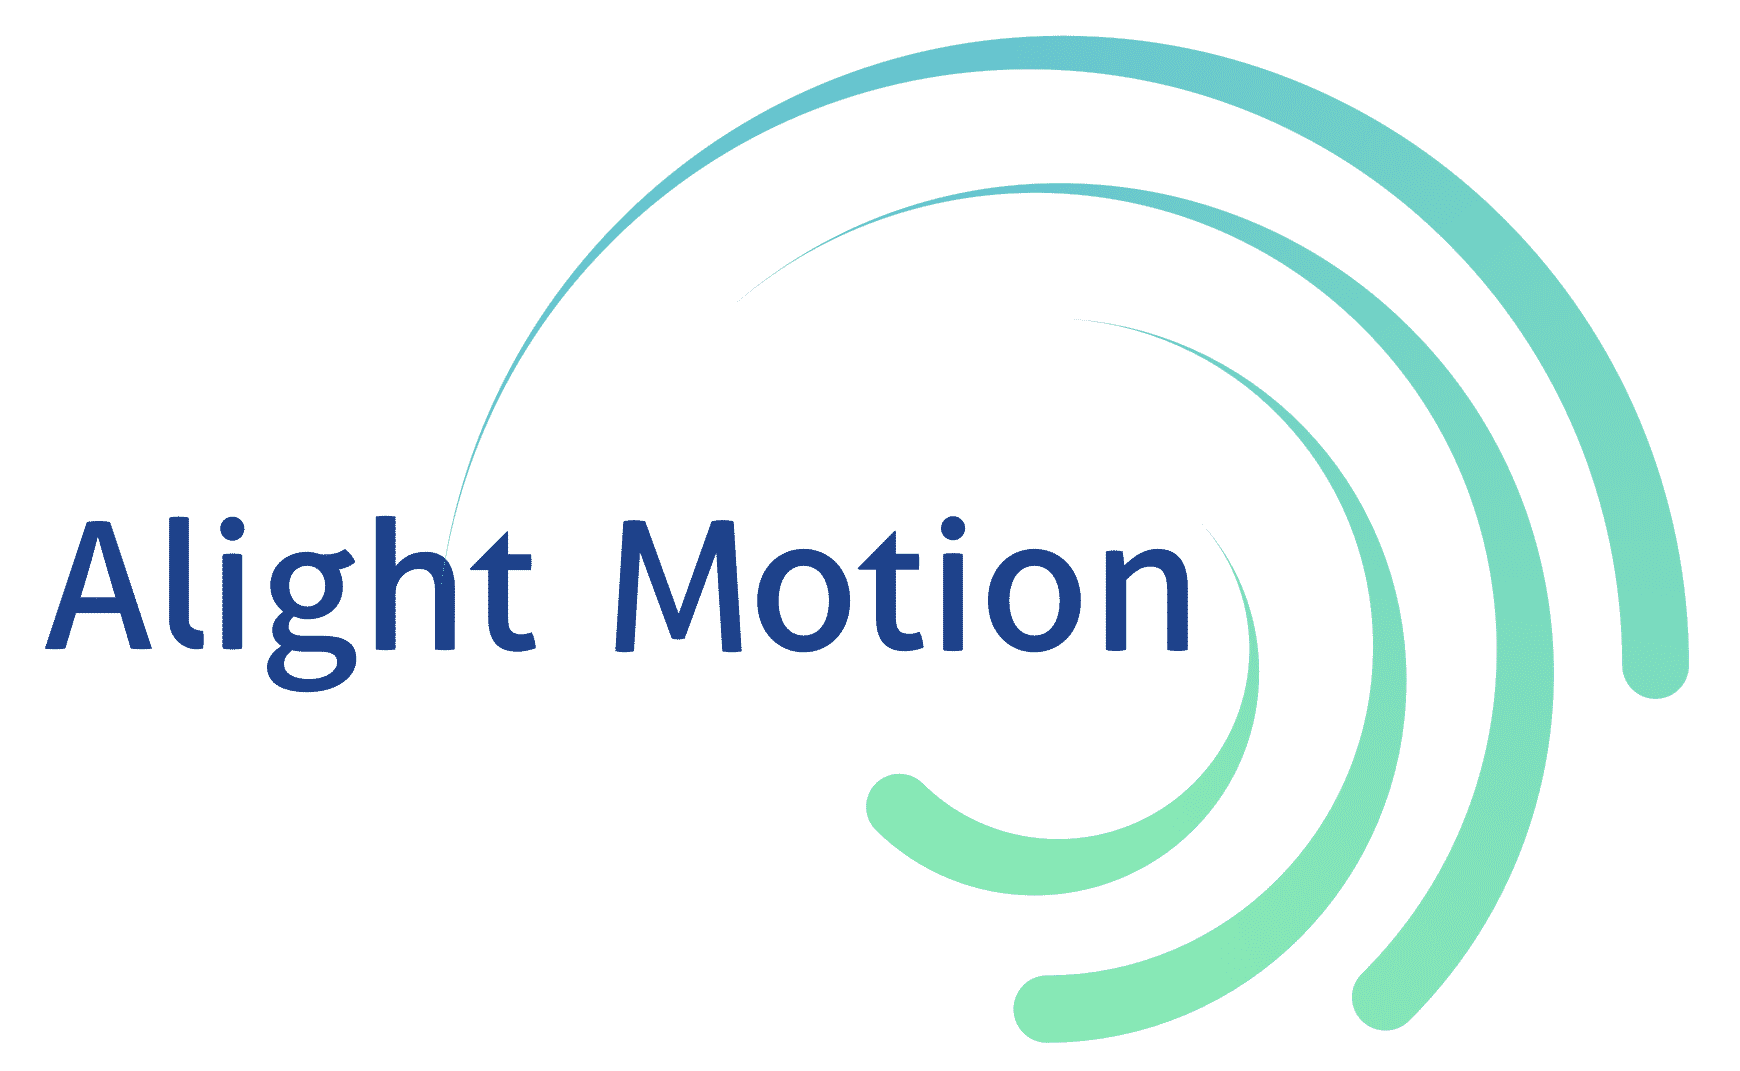 Логотип alight Motion. Алайт моушен. Водяной значок alight Motion. Видеоредактор alight Motion. Элайт моушен про